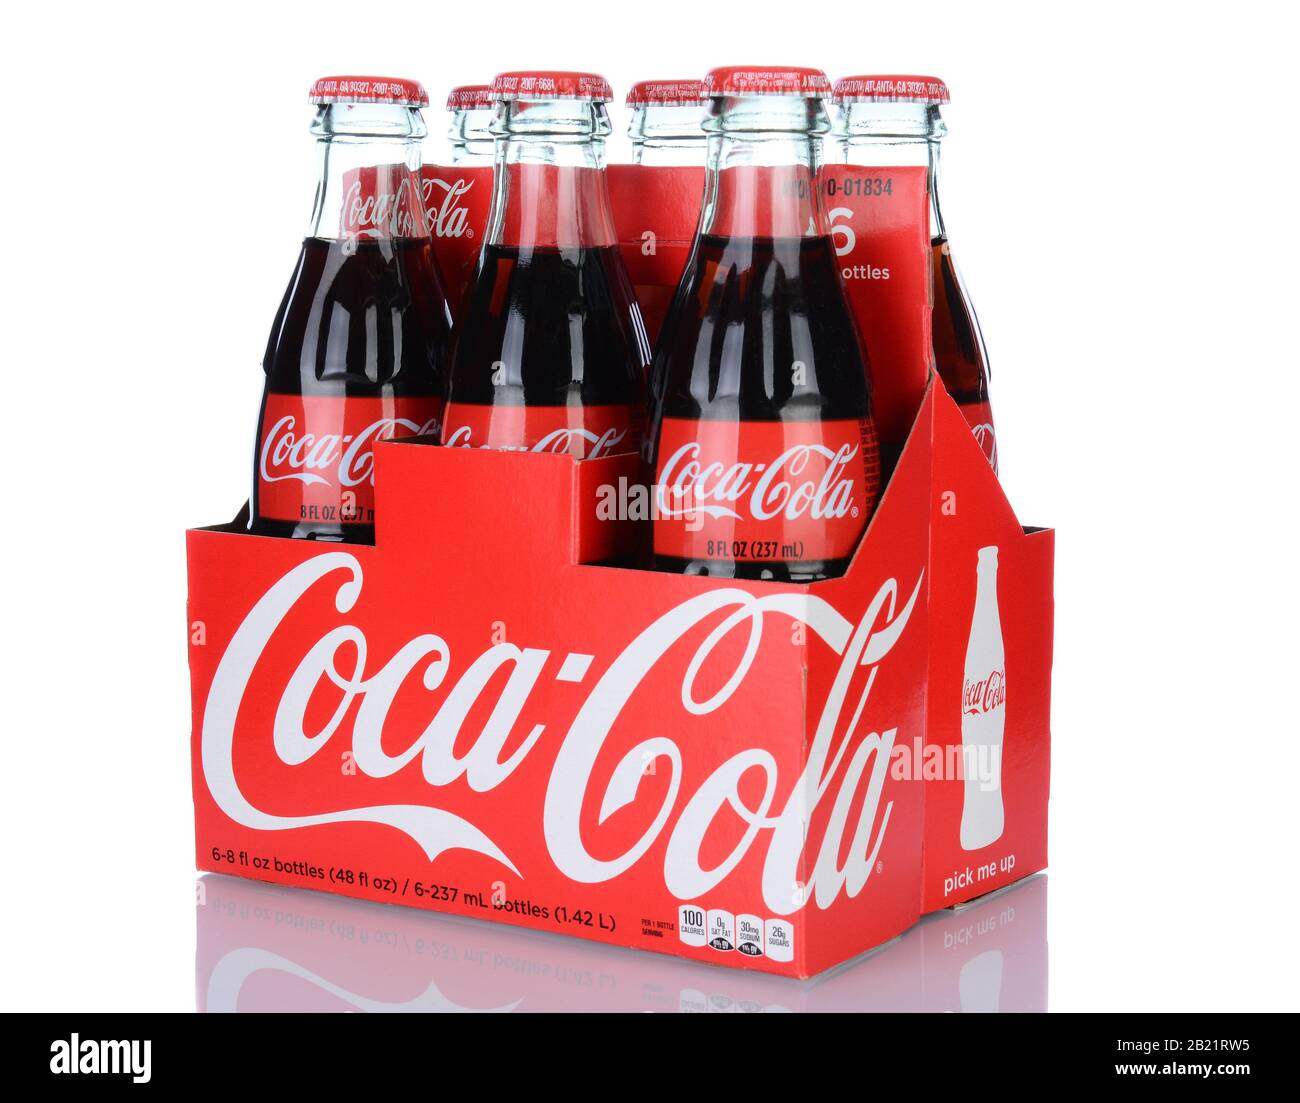 Irvine, CA - 29 gennaio 2014: Una 6pk di bottiglie Coca-Cola Classic. Coca-Cola è una delle bevande gassate preferite al mondo. Foto Stock